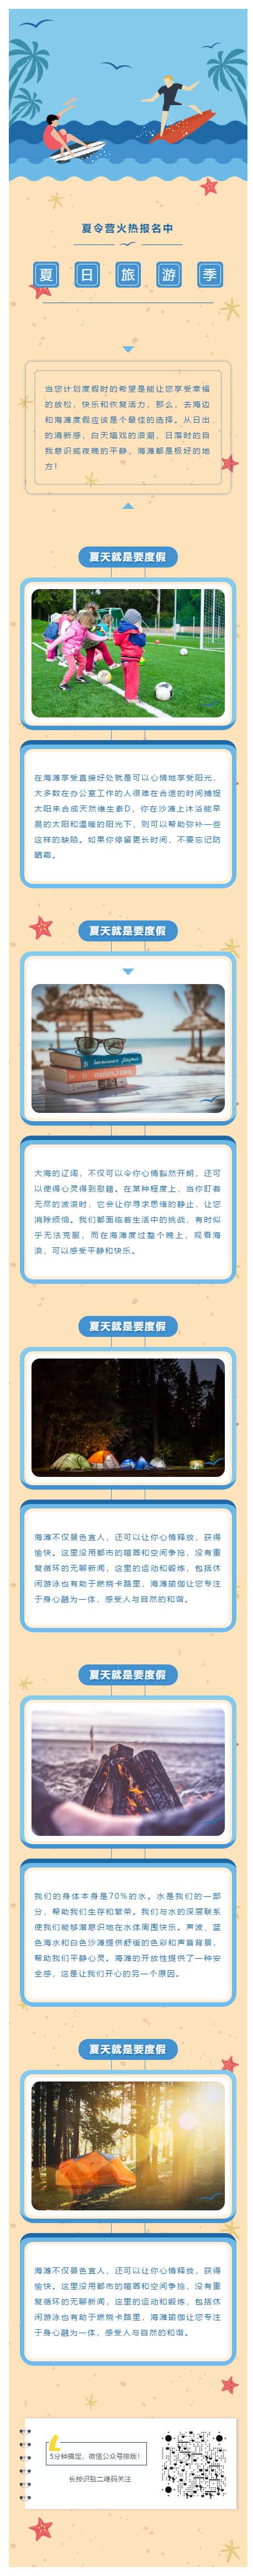 夏令营旅游大海蓝天教育学校风格模板微信推送图文素材